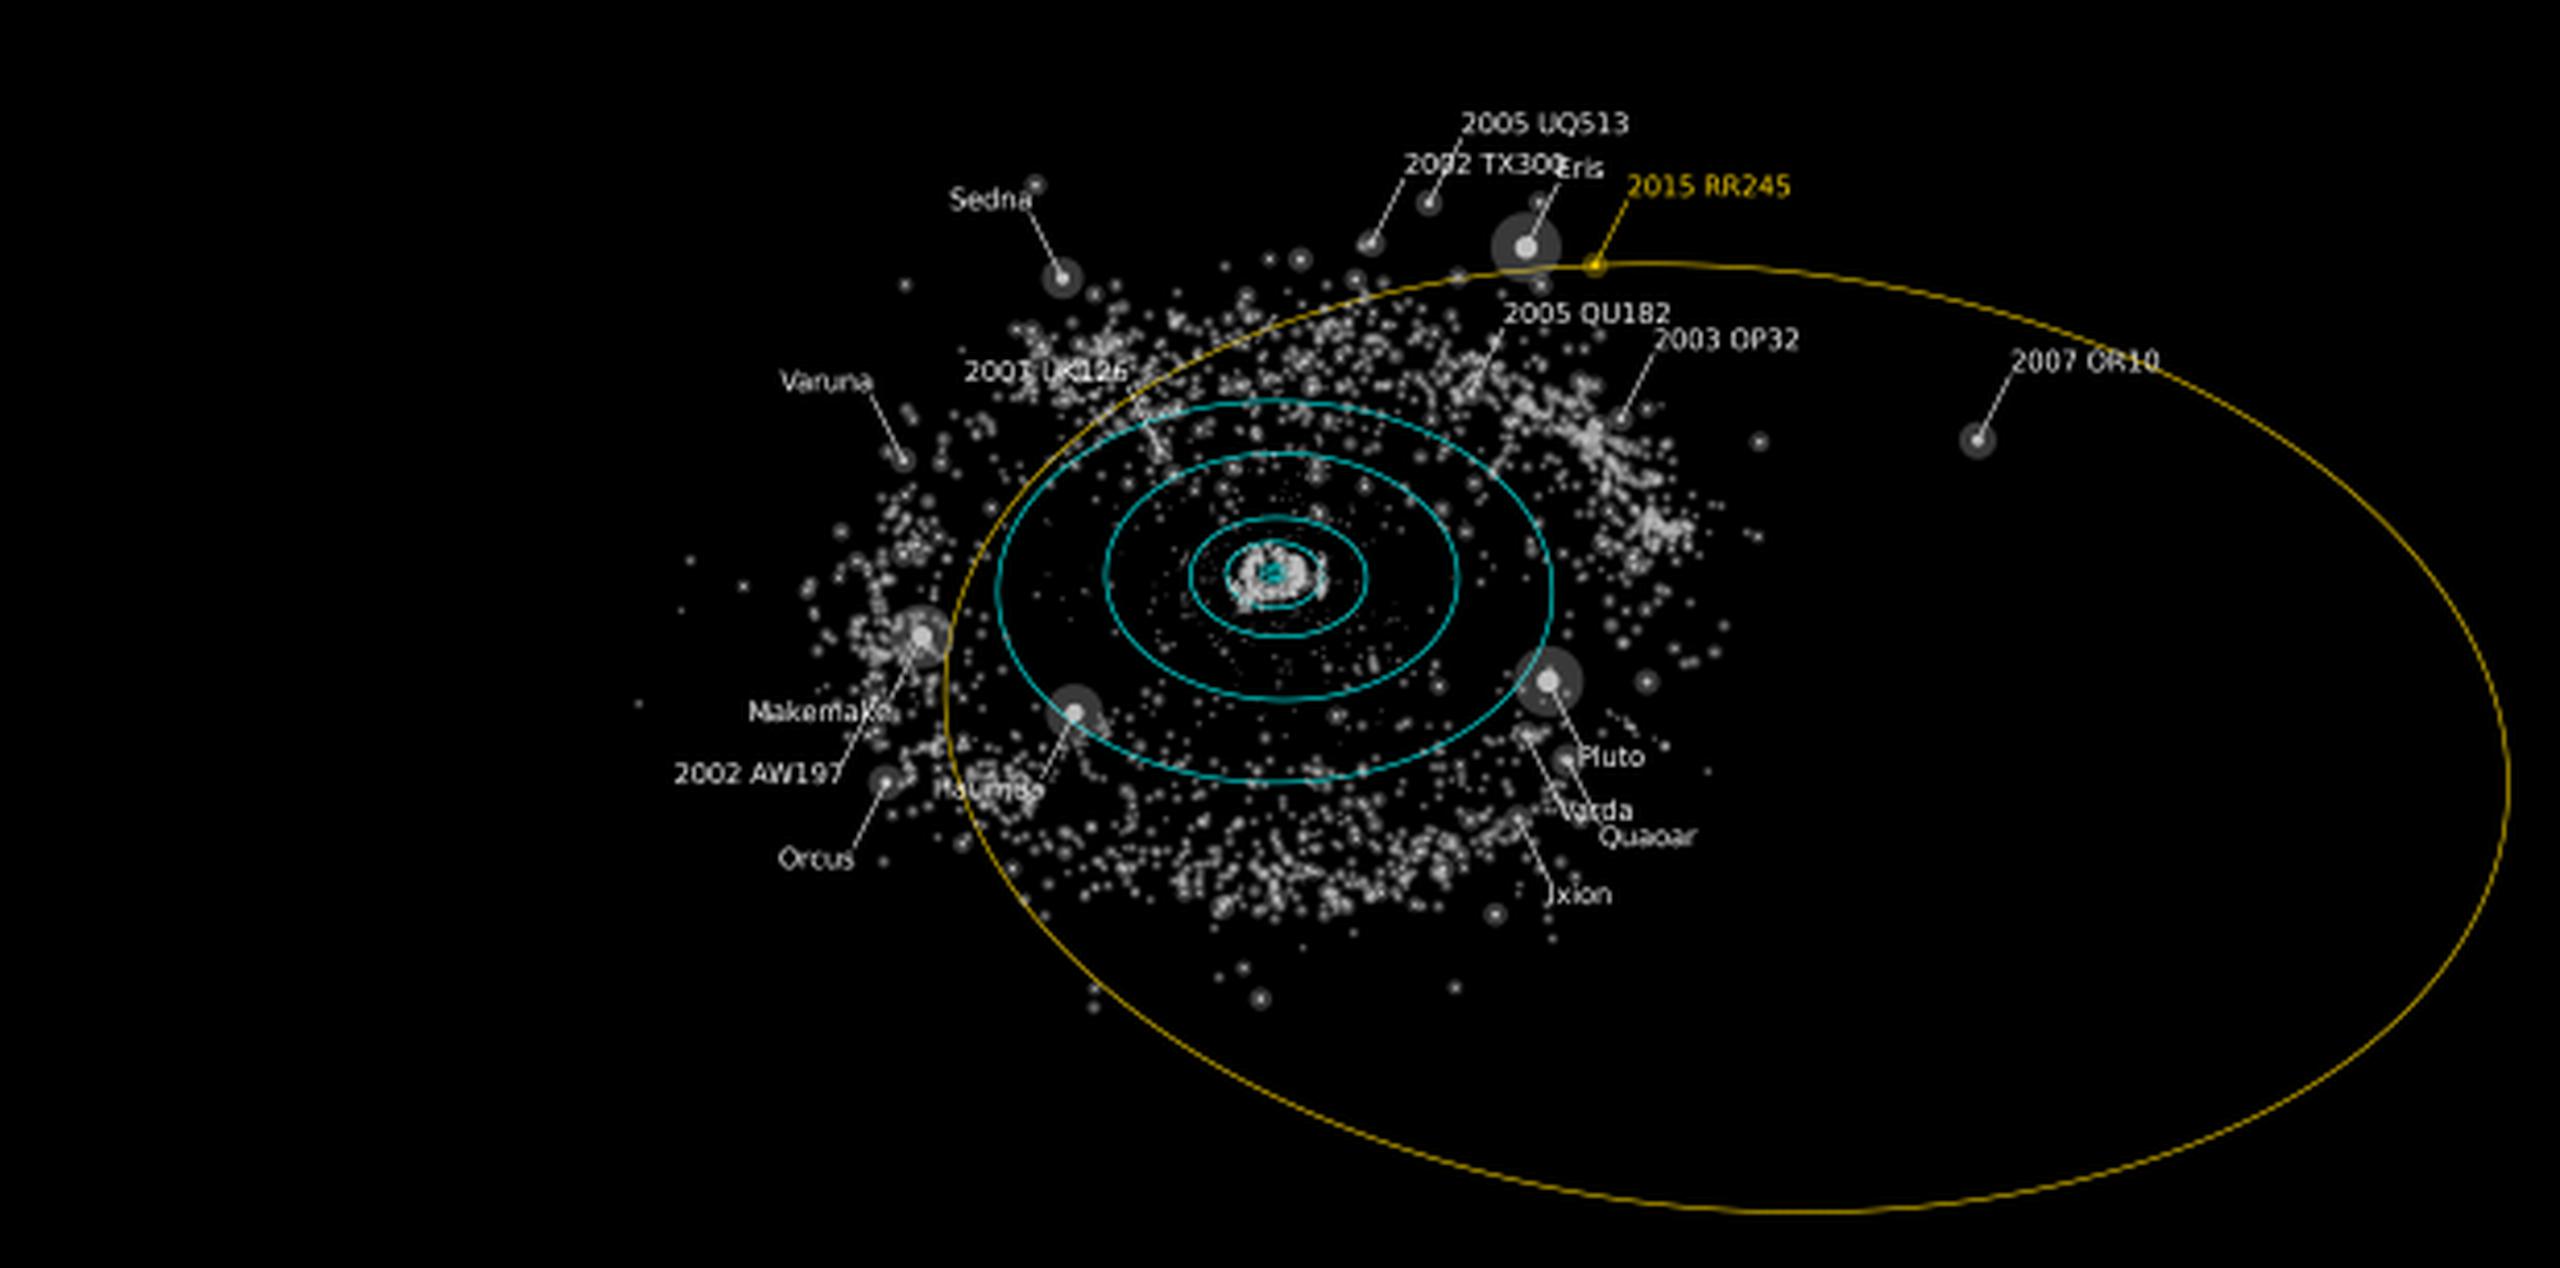 Bautizado de forma provisional como RR245, tiene un diámetro de unos 700 kilómetros y una de las órbitas más grandes para un planeta enano. (Alex Parker OSSOS team)